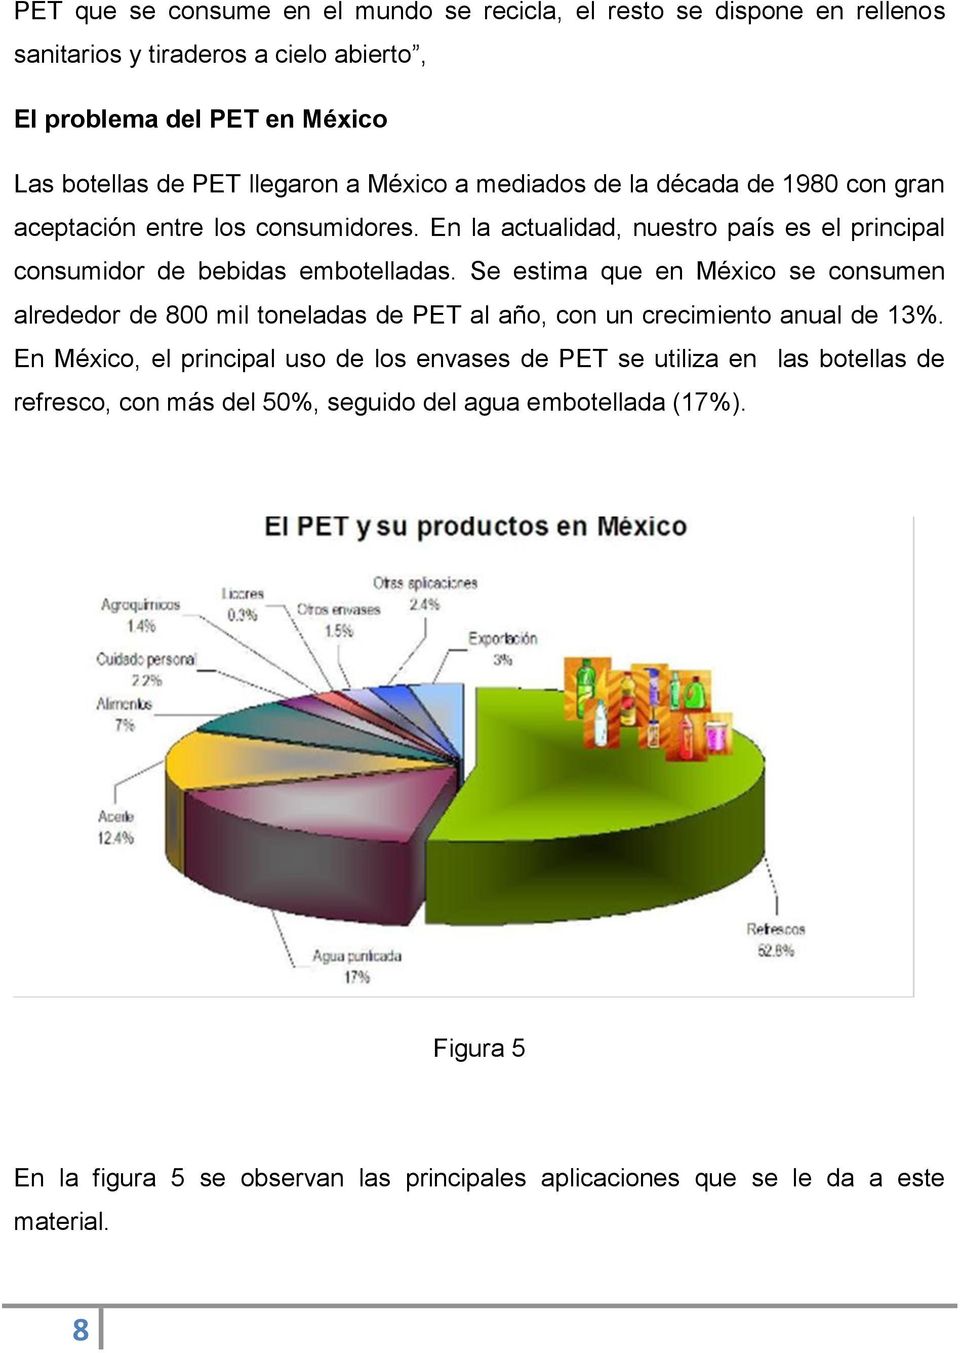 Se estima que en México se consumen alrededor de 800 mil toneladas de PET al año, con un crecimiento anual de 13%.